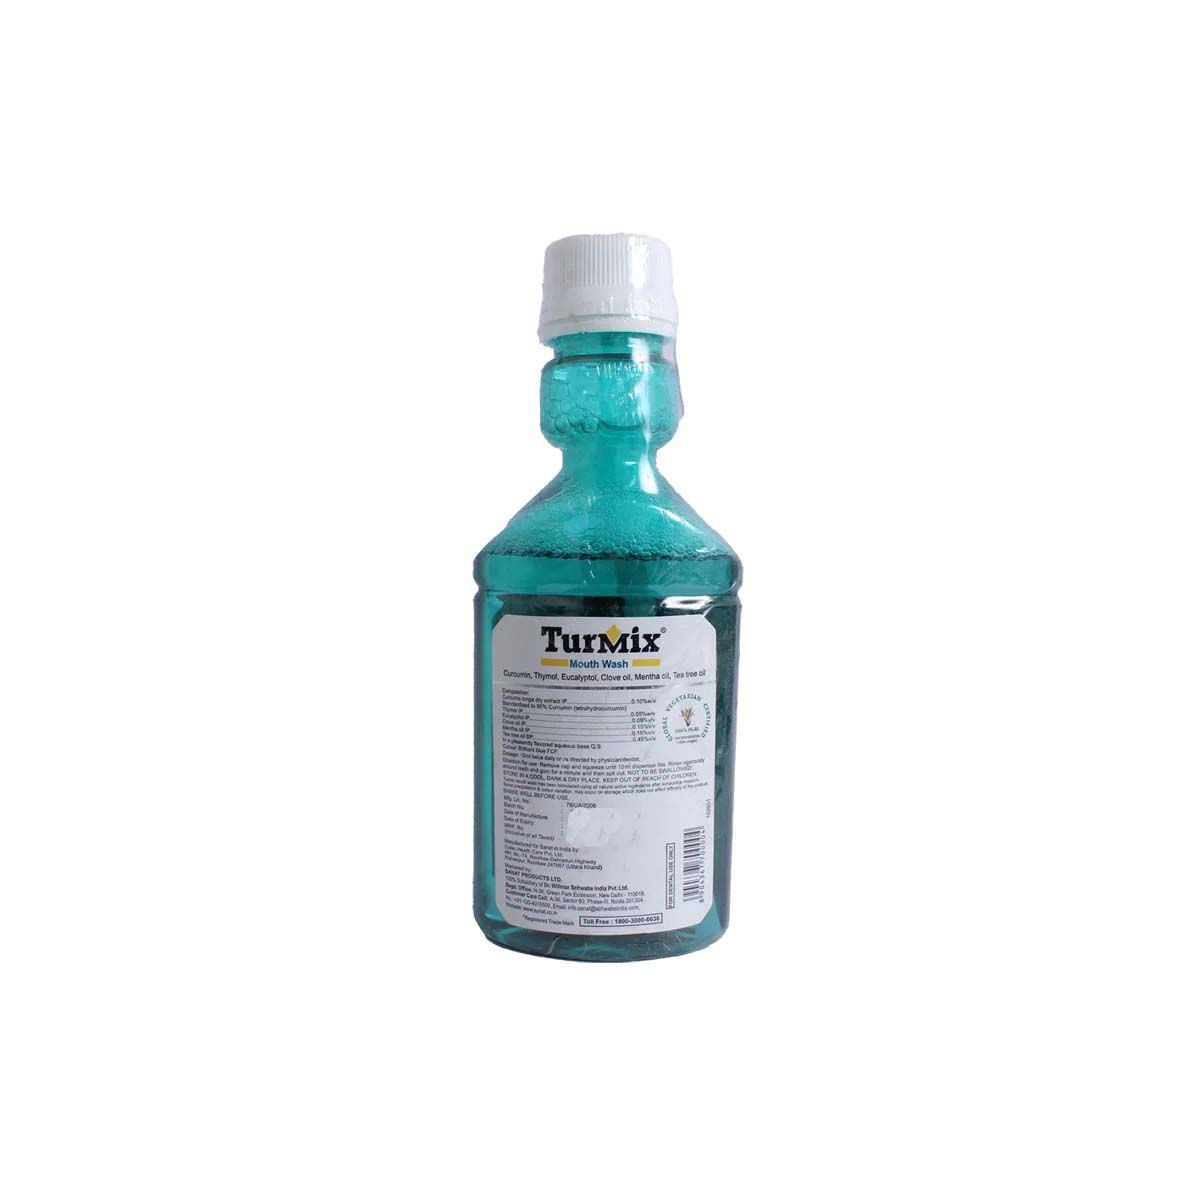 Turmix Mouthwash, 150 ml, Pack of 1 